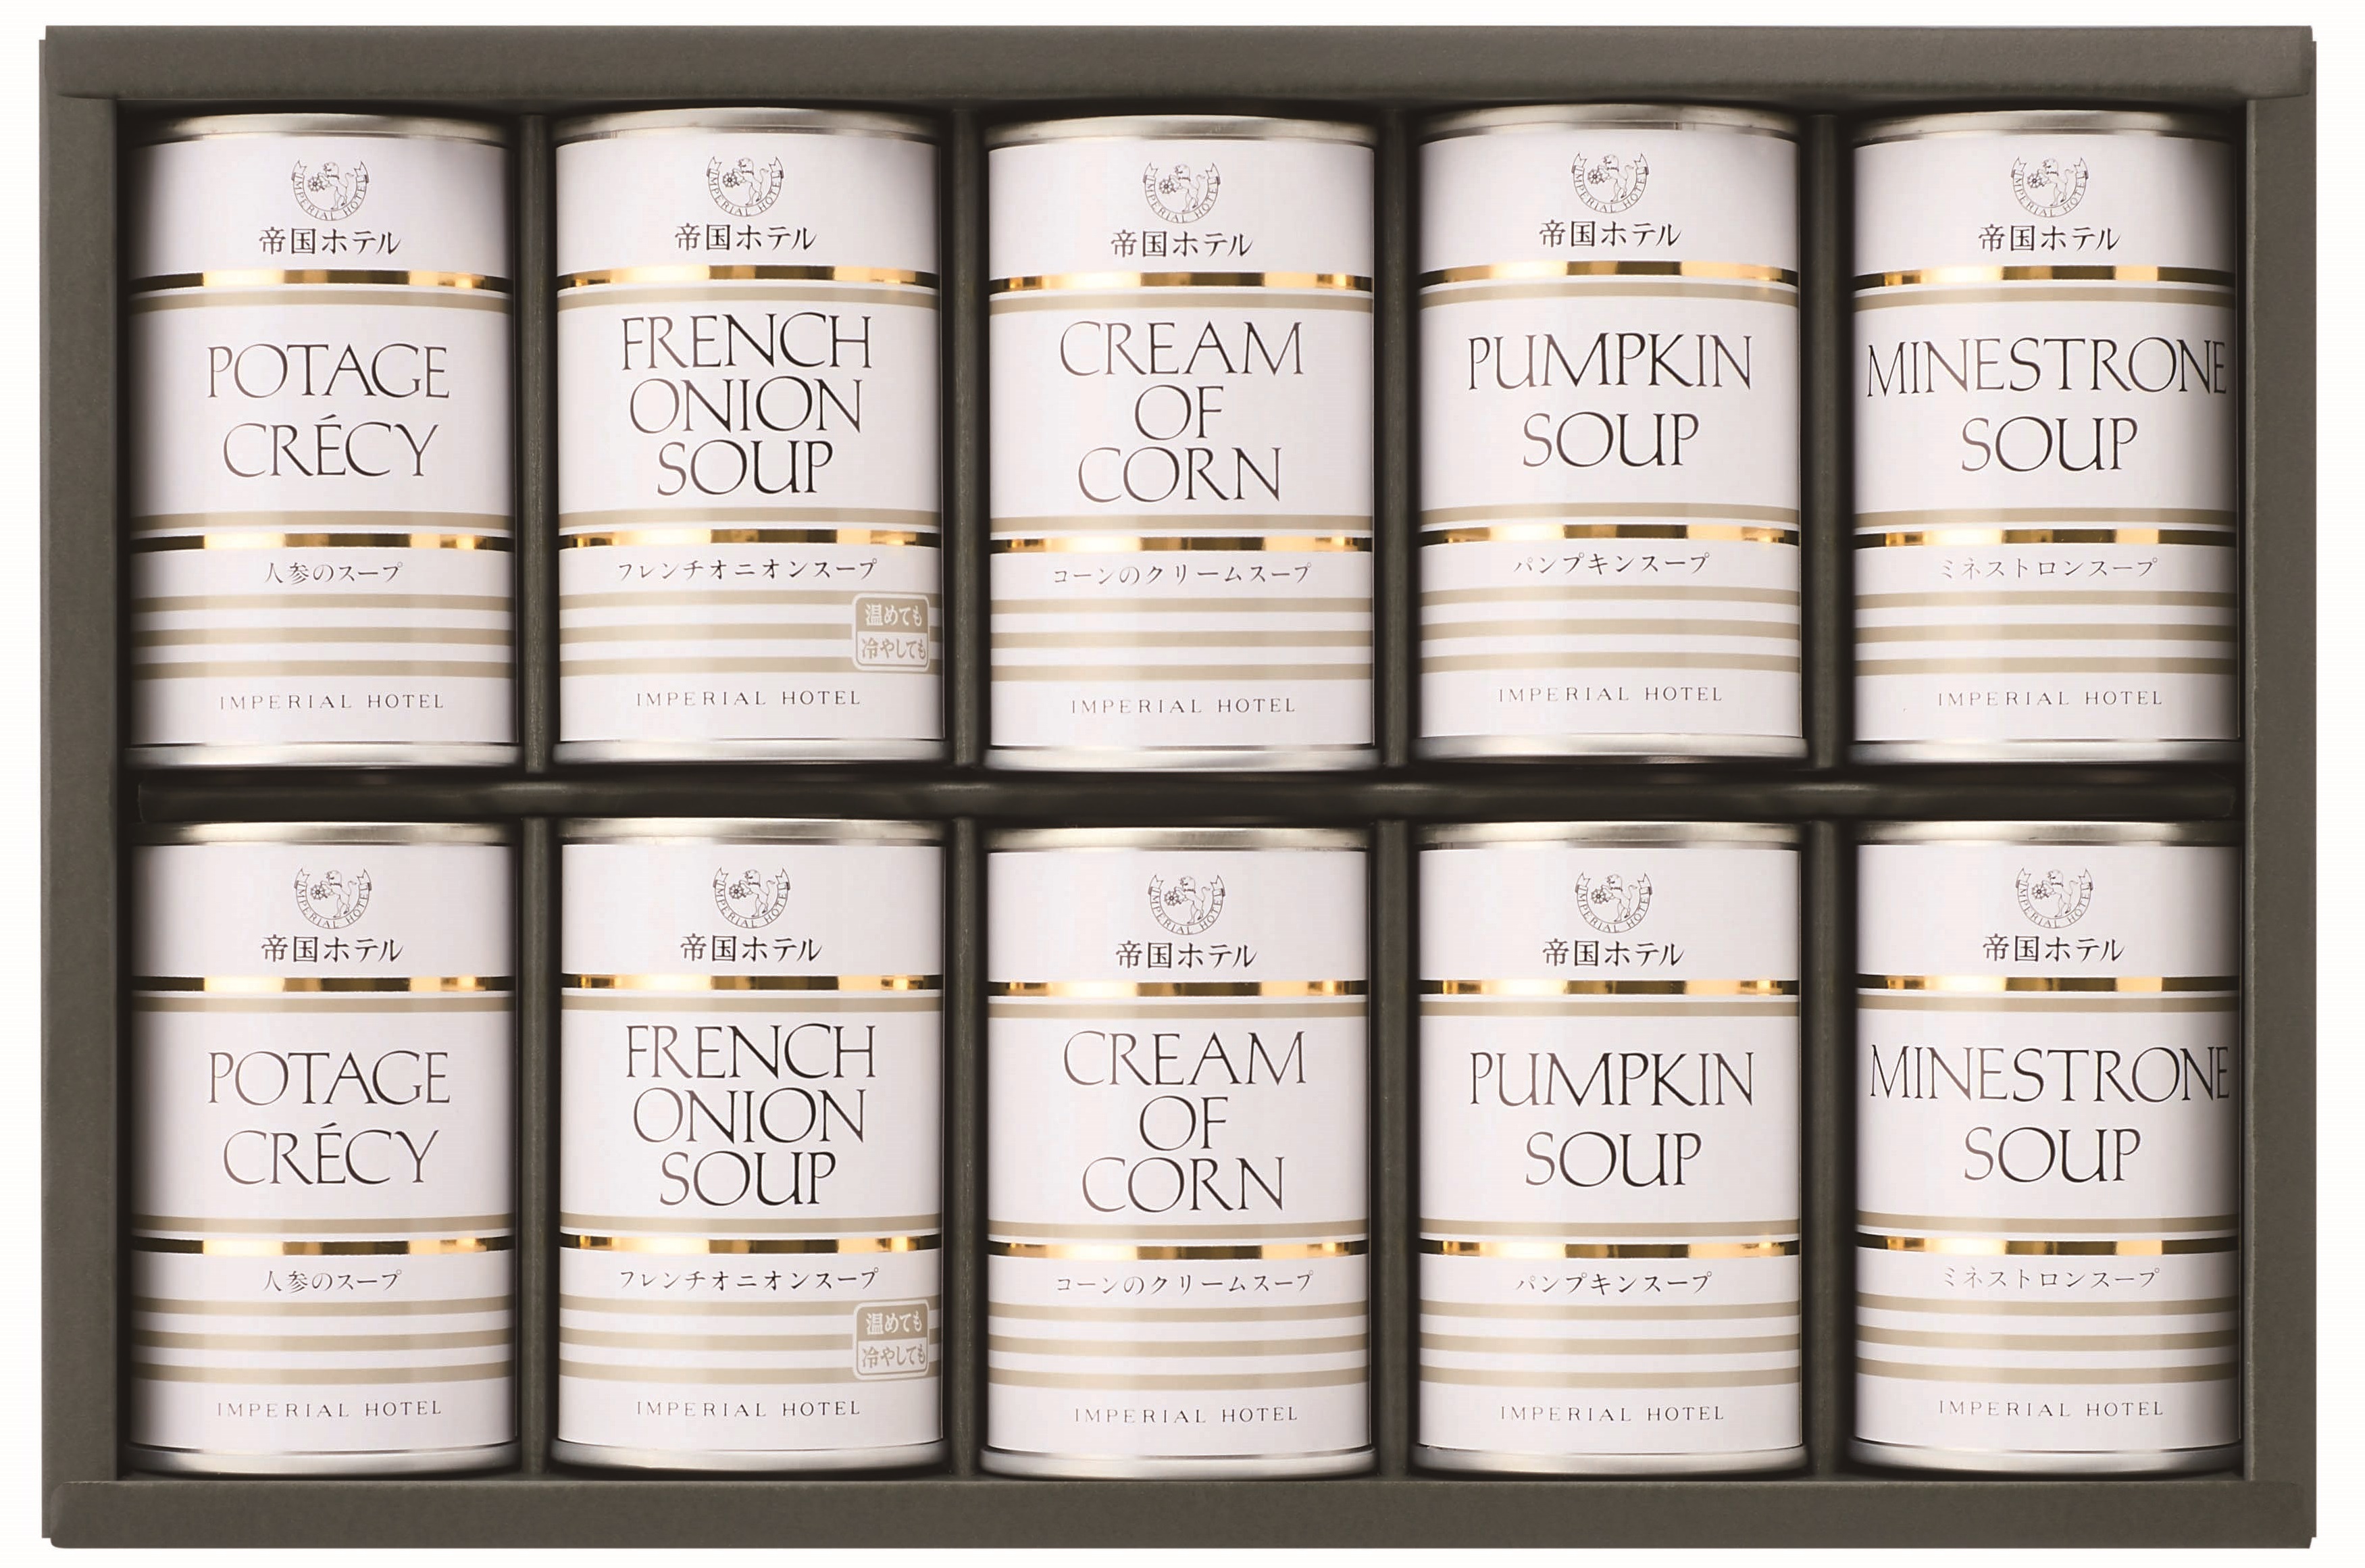 帝国ホテル　スープ缶詰詰合せ(10缶)